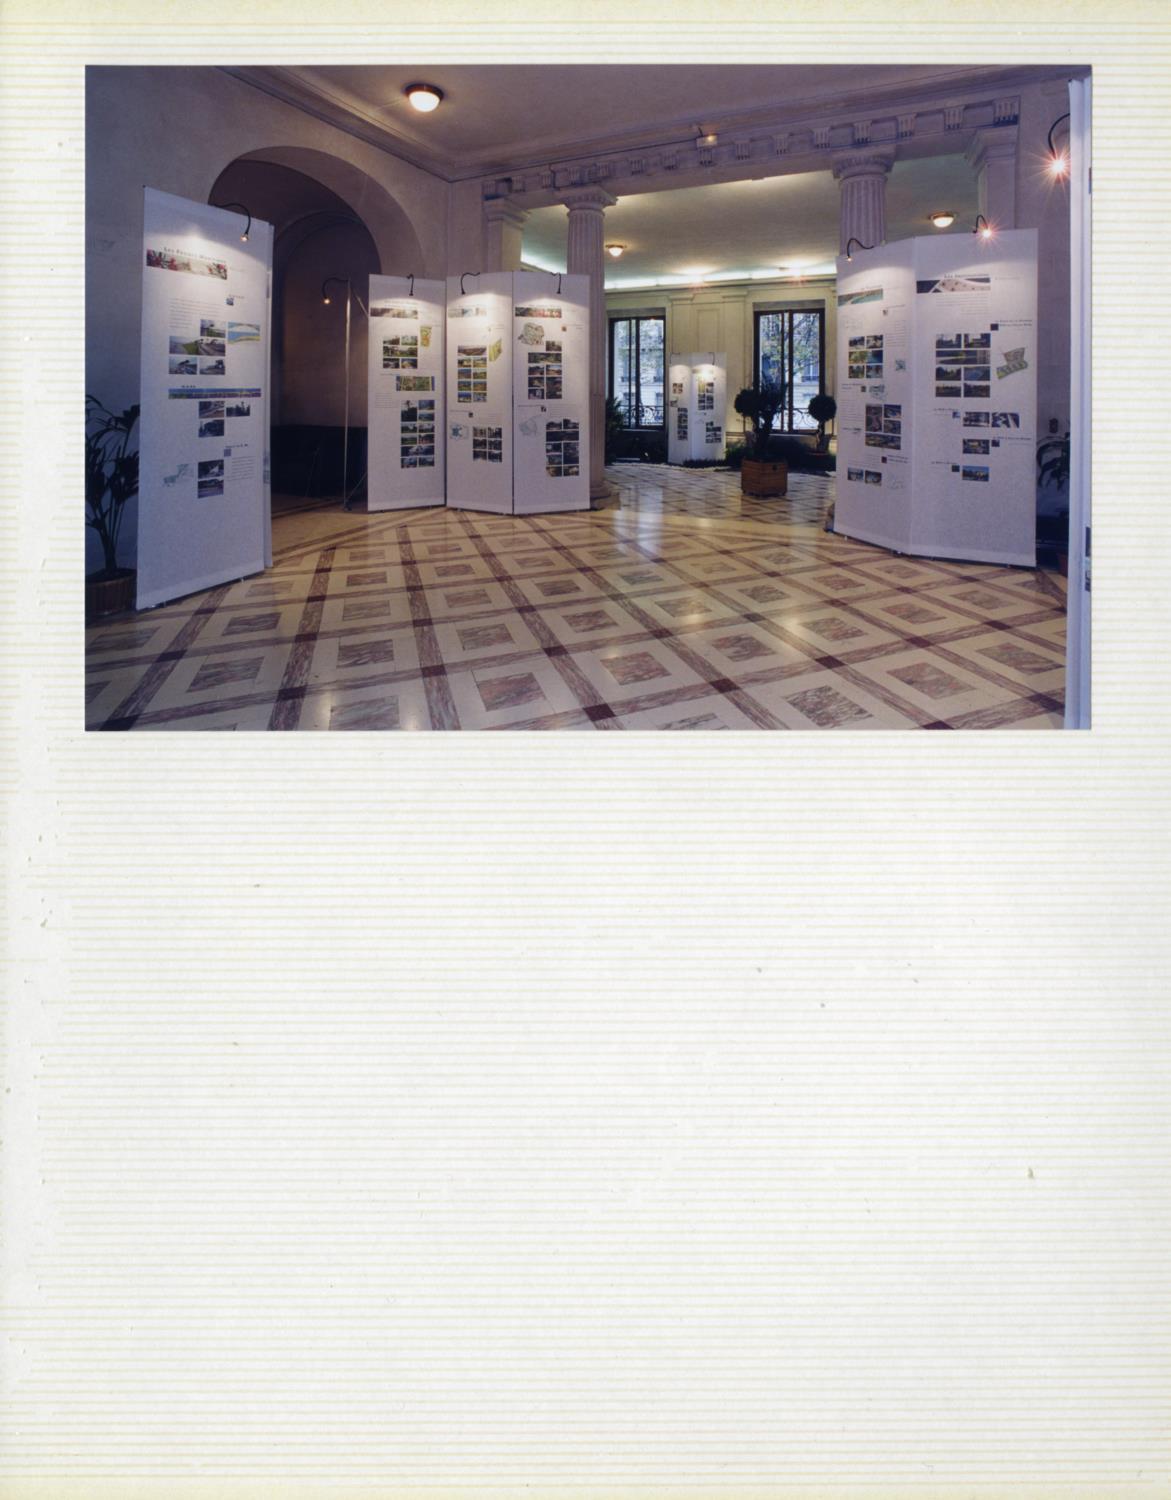 Fotografias em álbum da inauguração da exposição